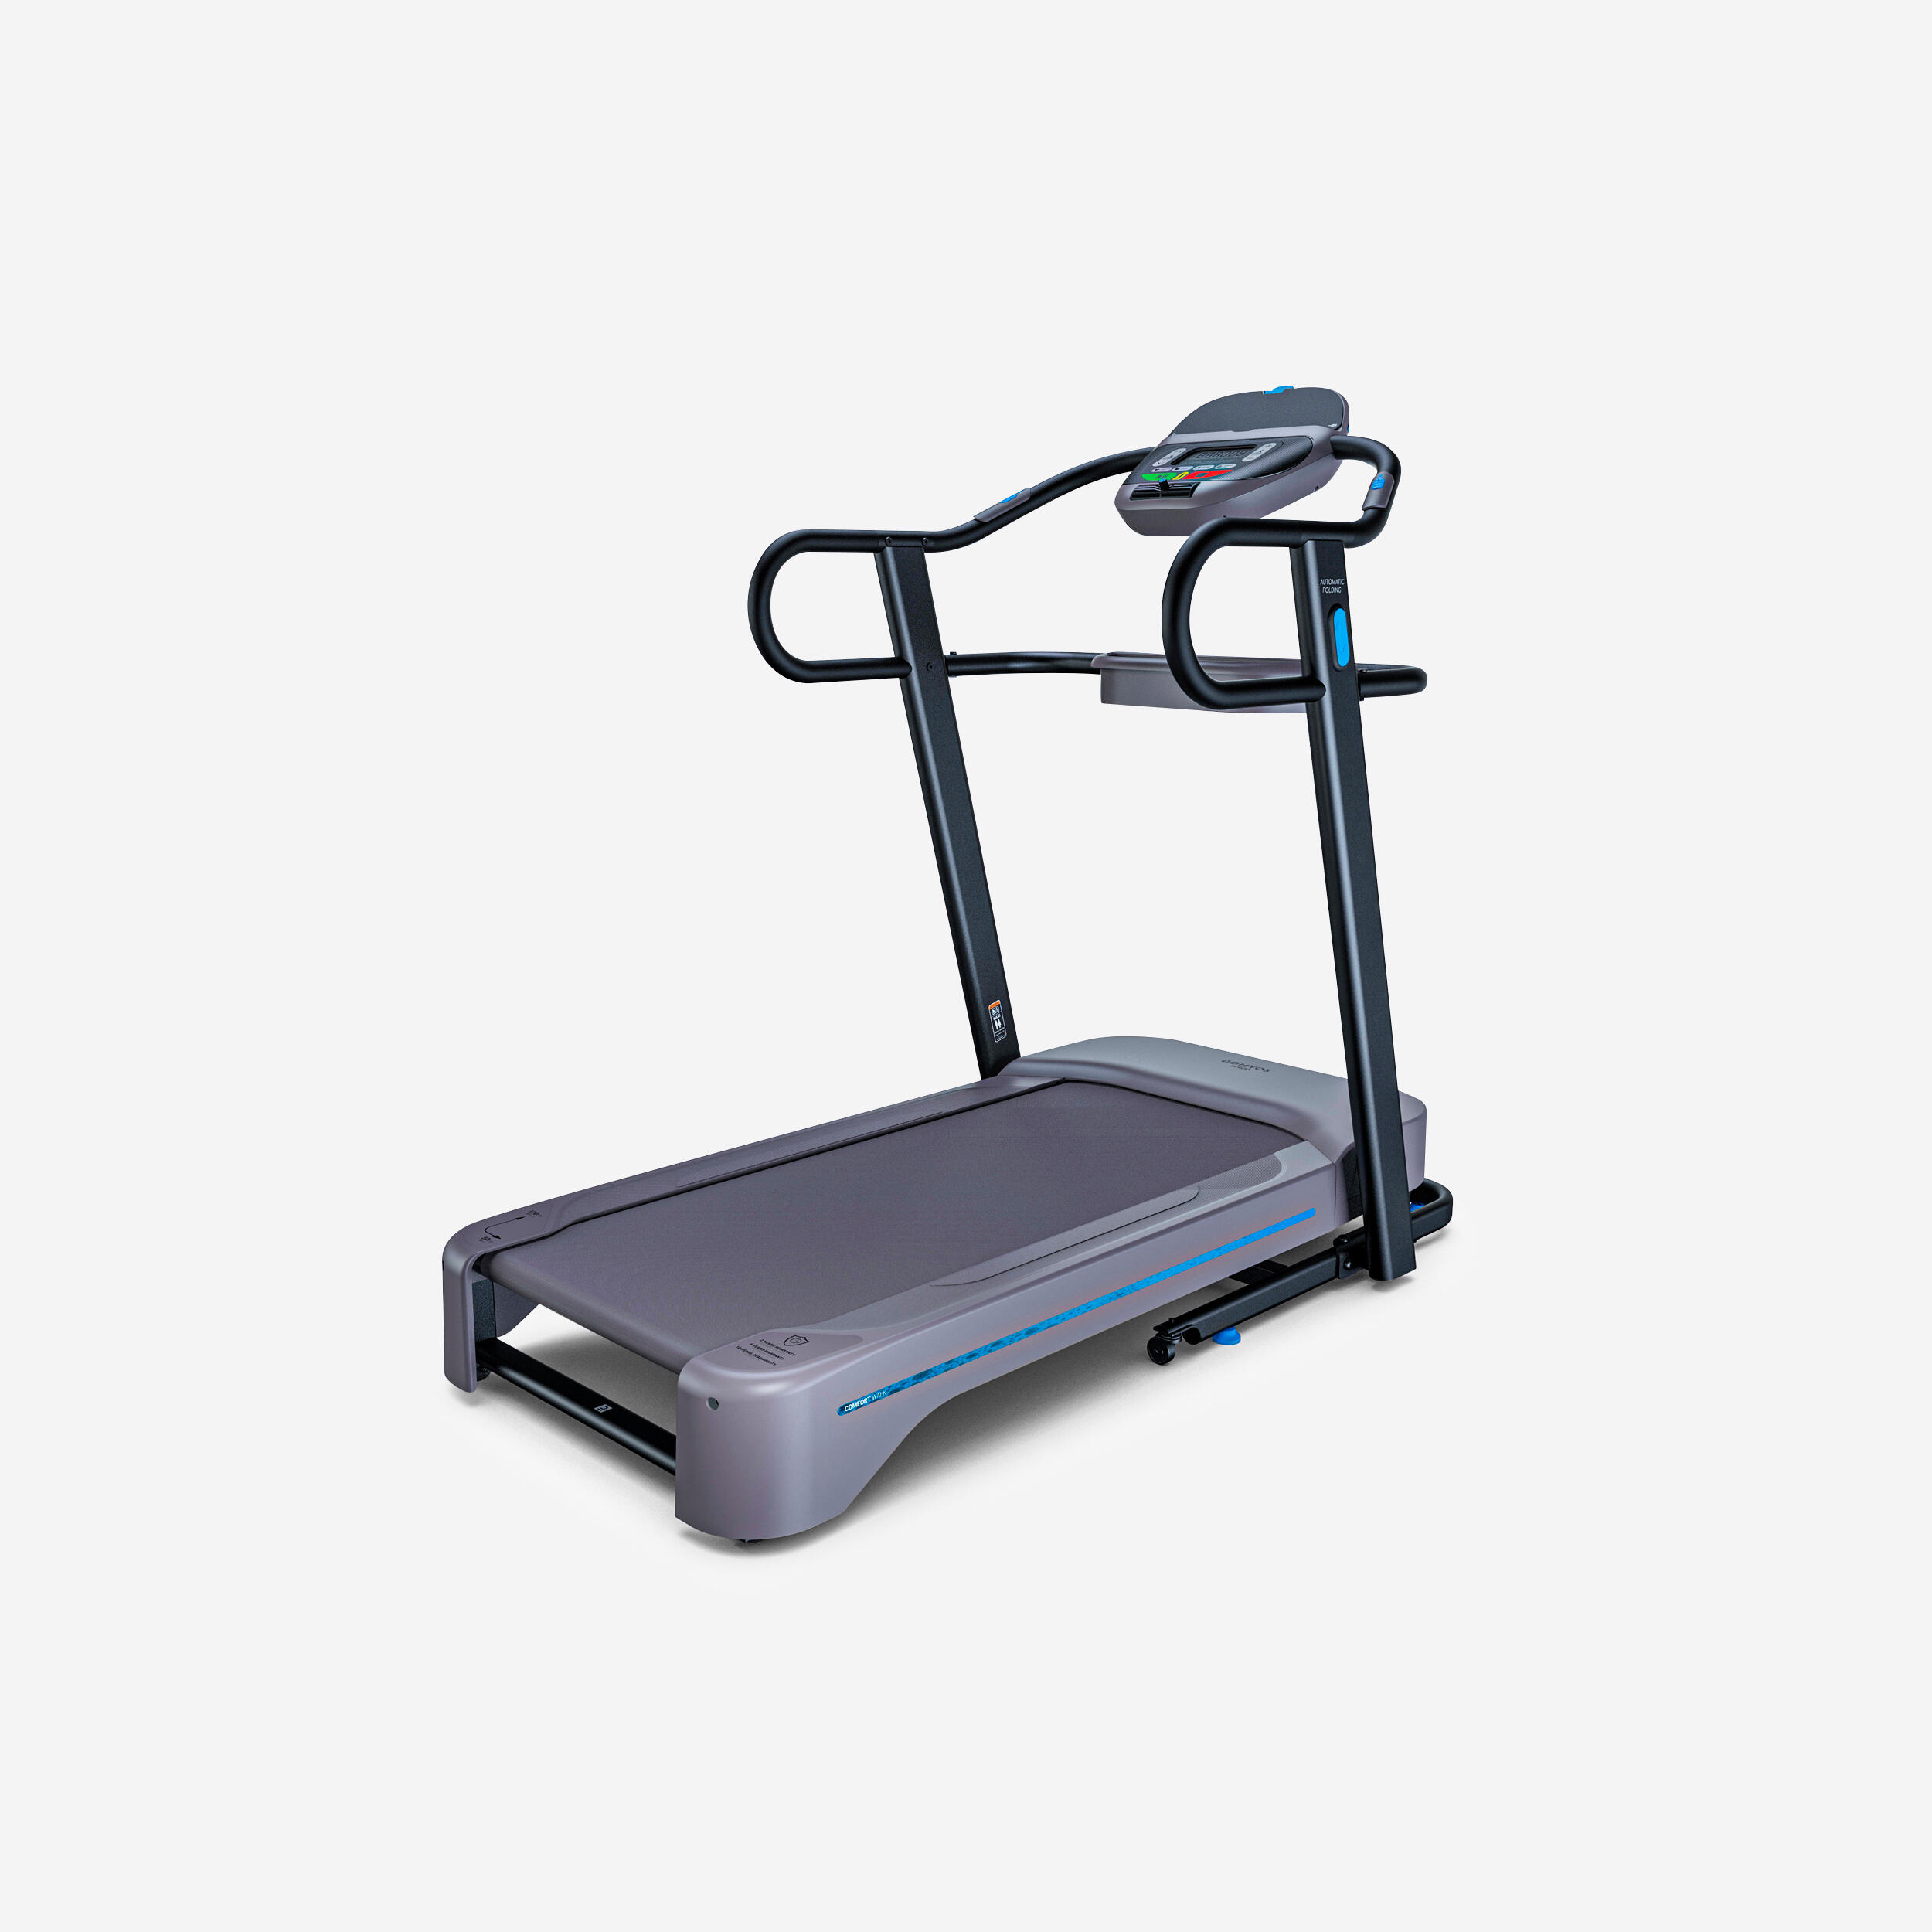 Bandă de mers W900 Conectată și confortabilă 10 km/h 50 x 120 cm 120  Aparate fitness cardio